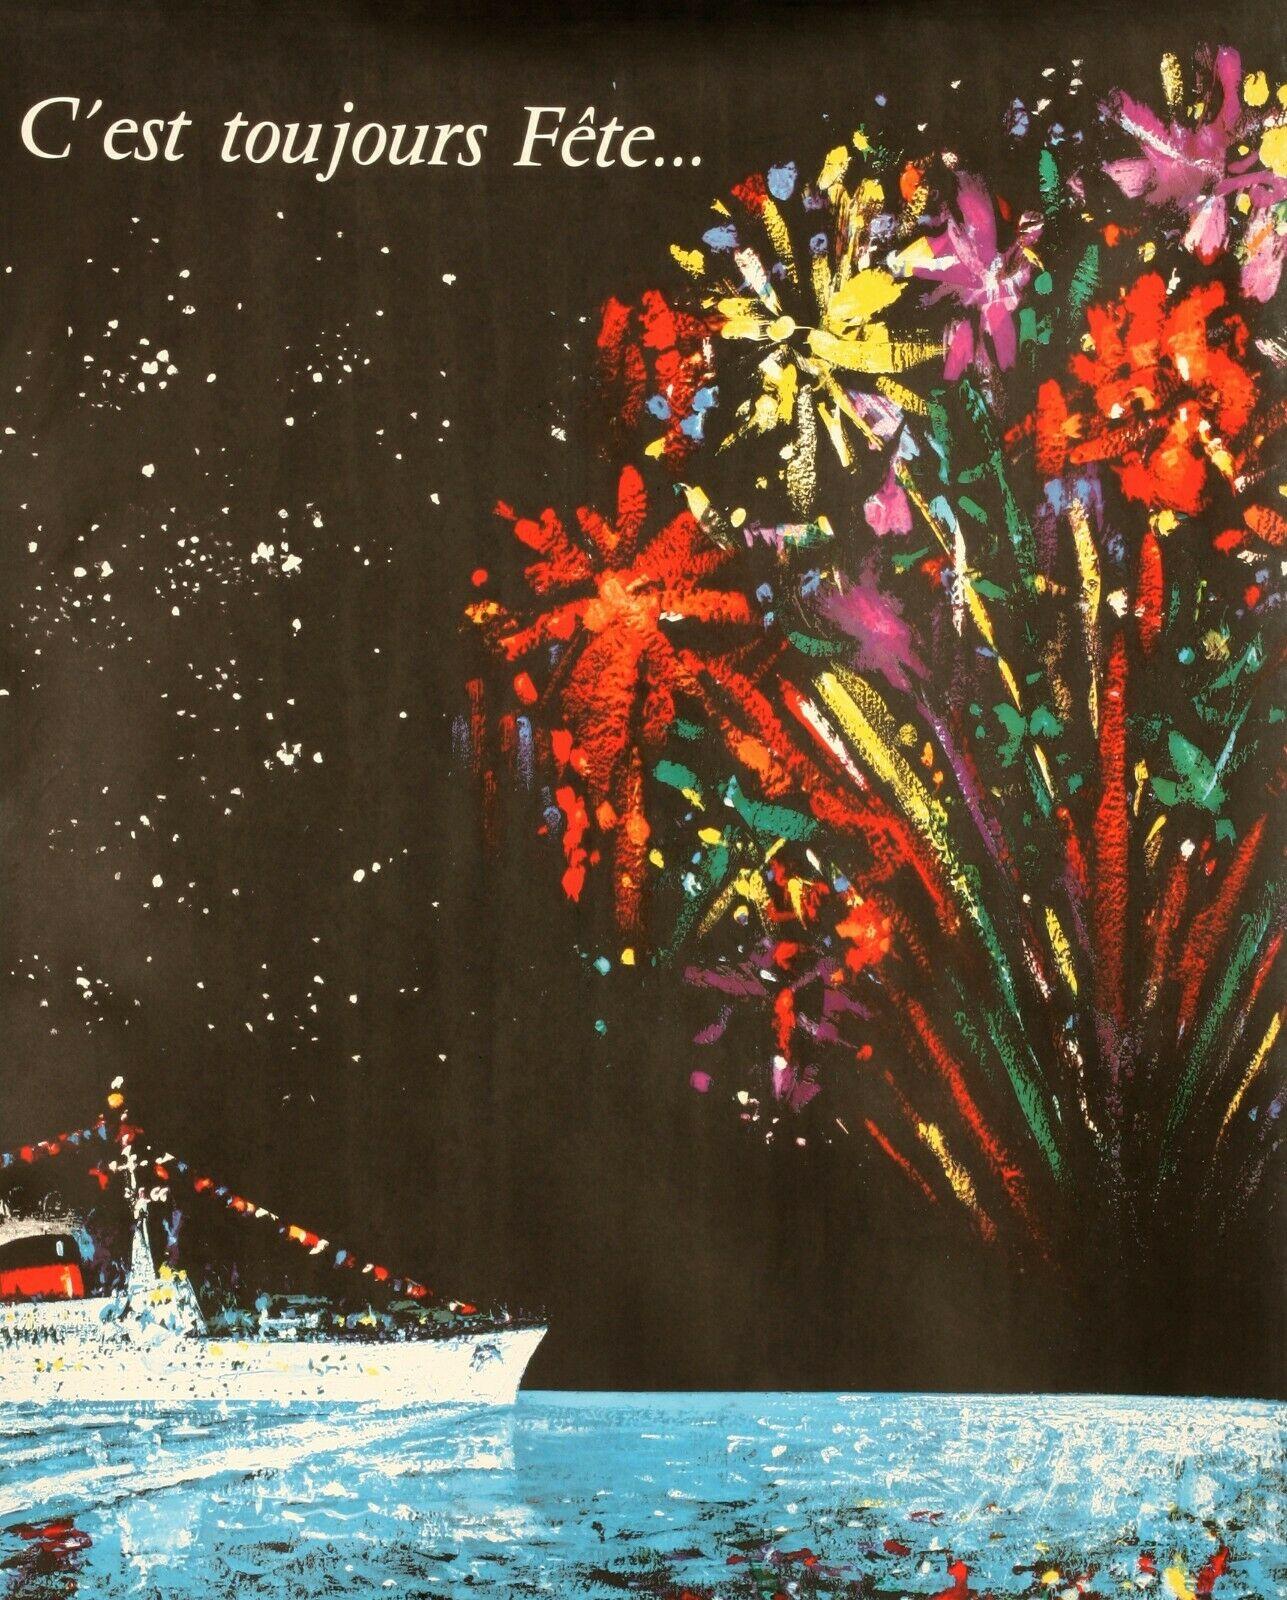 1950s Vintage Poster-Bouvard-At Sea-Cruise Ship-Fireworks Party, 1956

Affiche publicitaire pour la Compagnie Générale Transatlantique, qui propose des voyages sur de grands navires comme l'